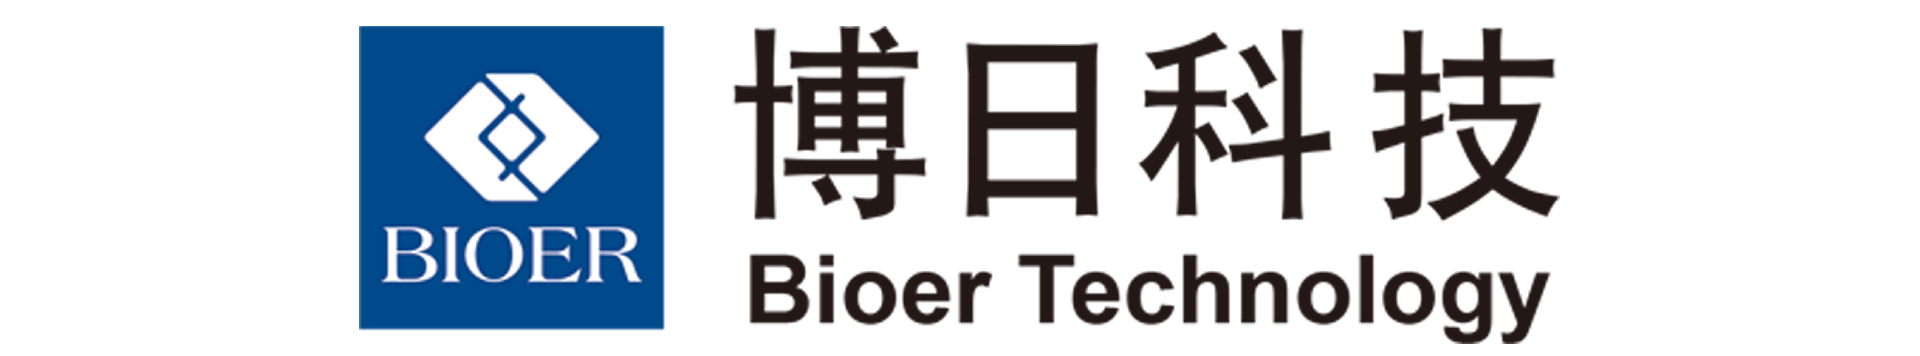 Bioer-博日科技